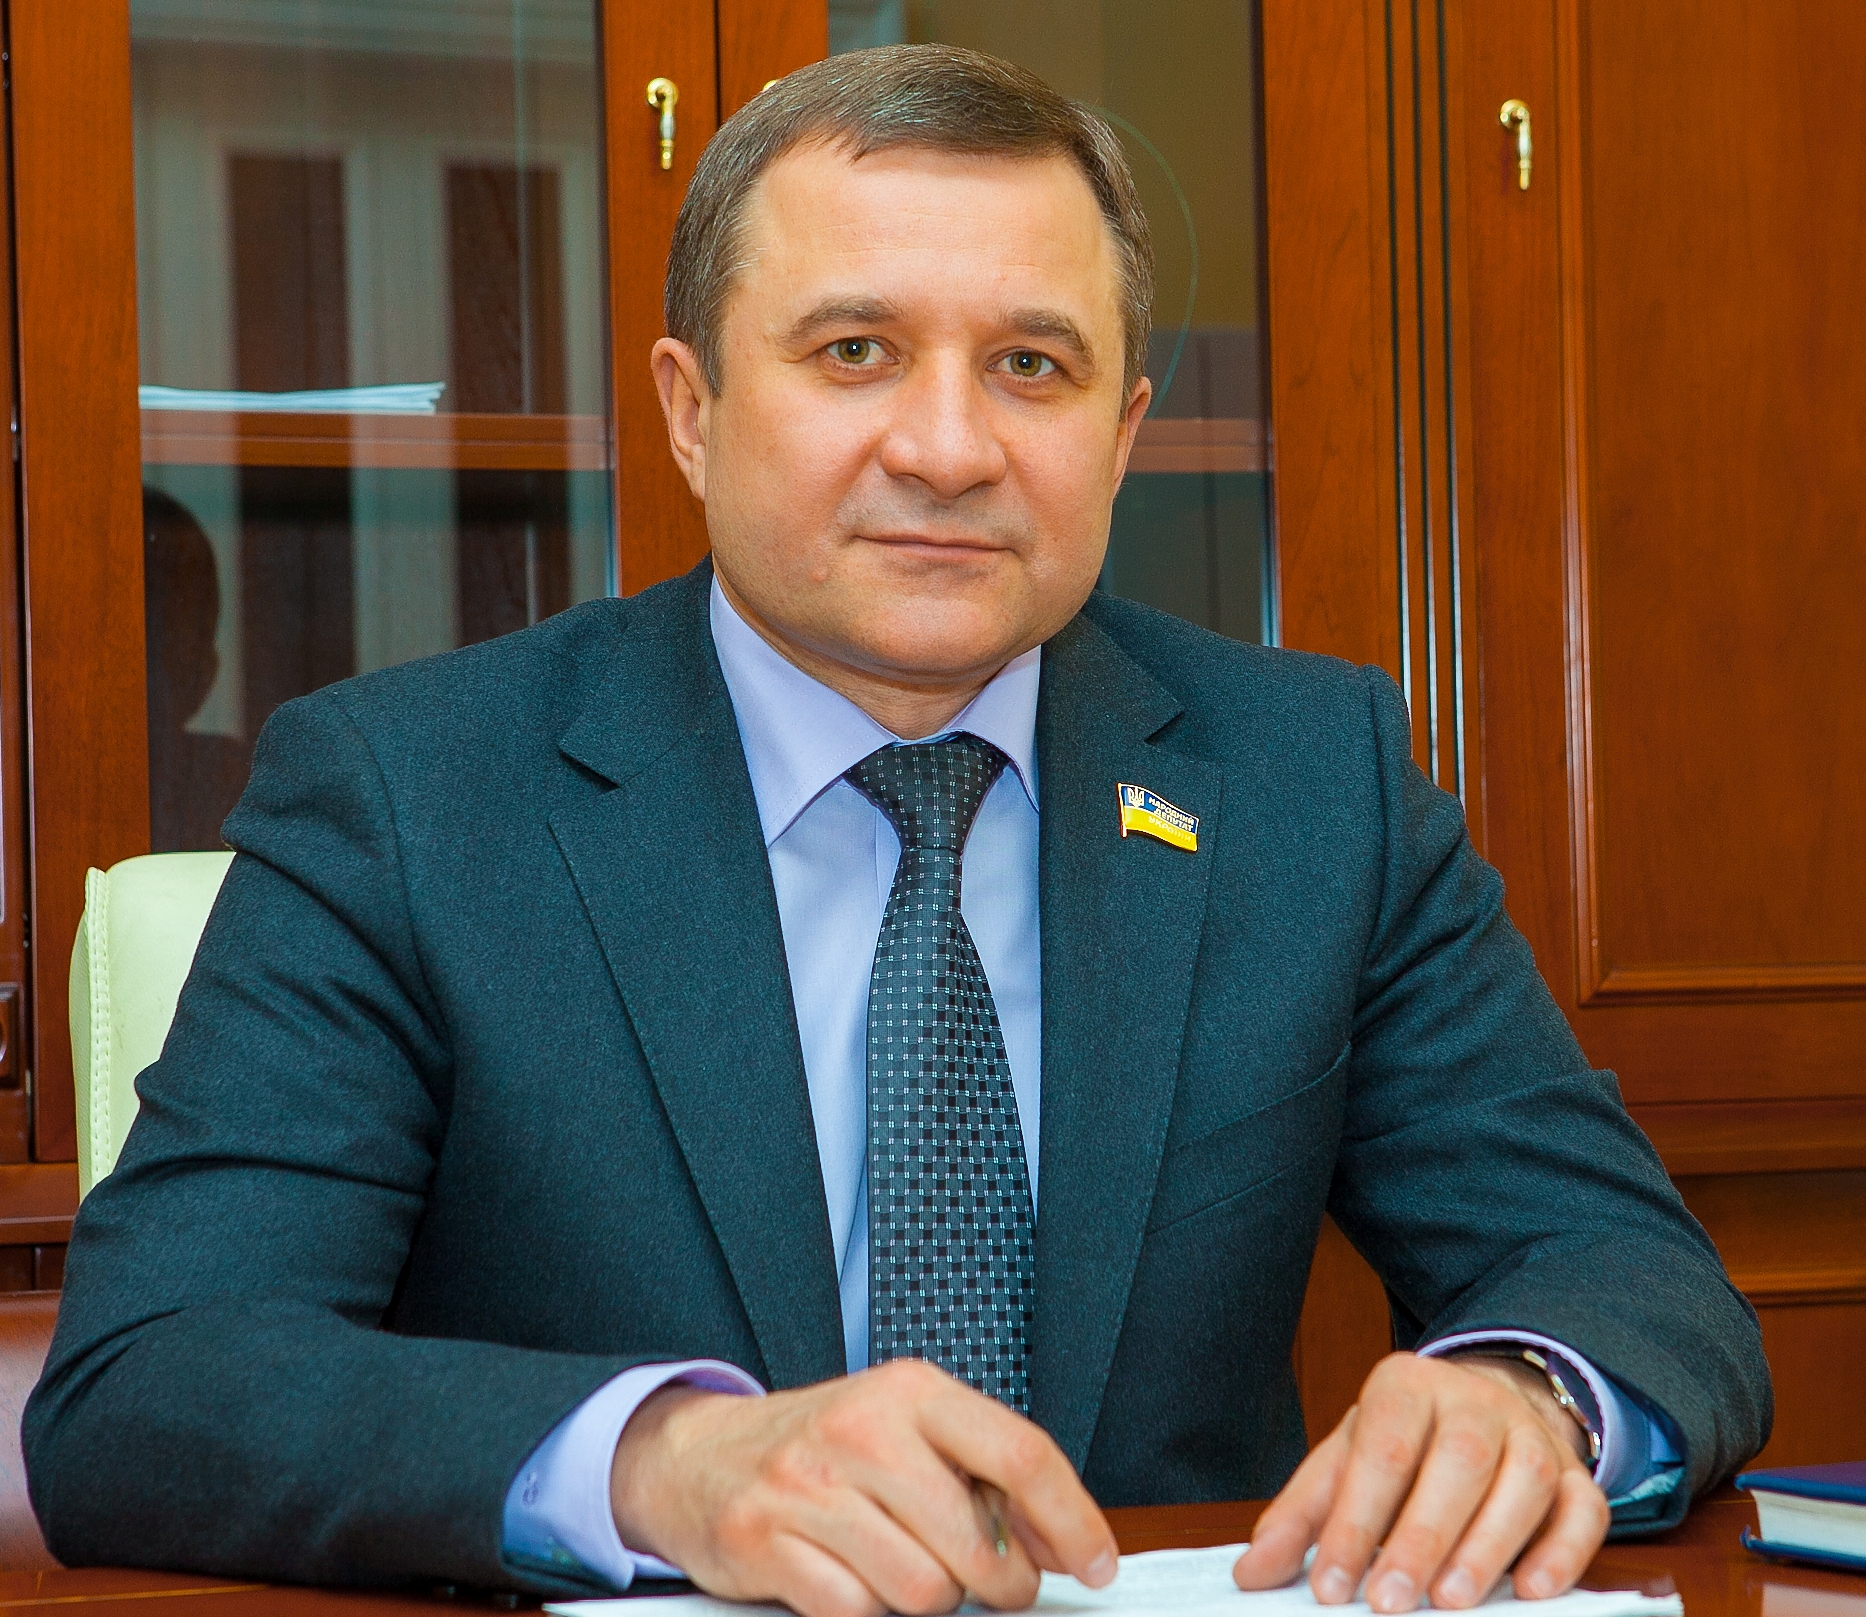 Яценюк запізнився на зустріч із Януковичем, – нардеп. Фото